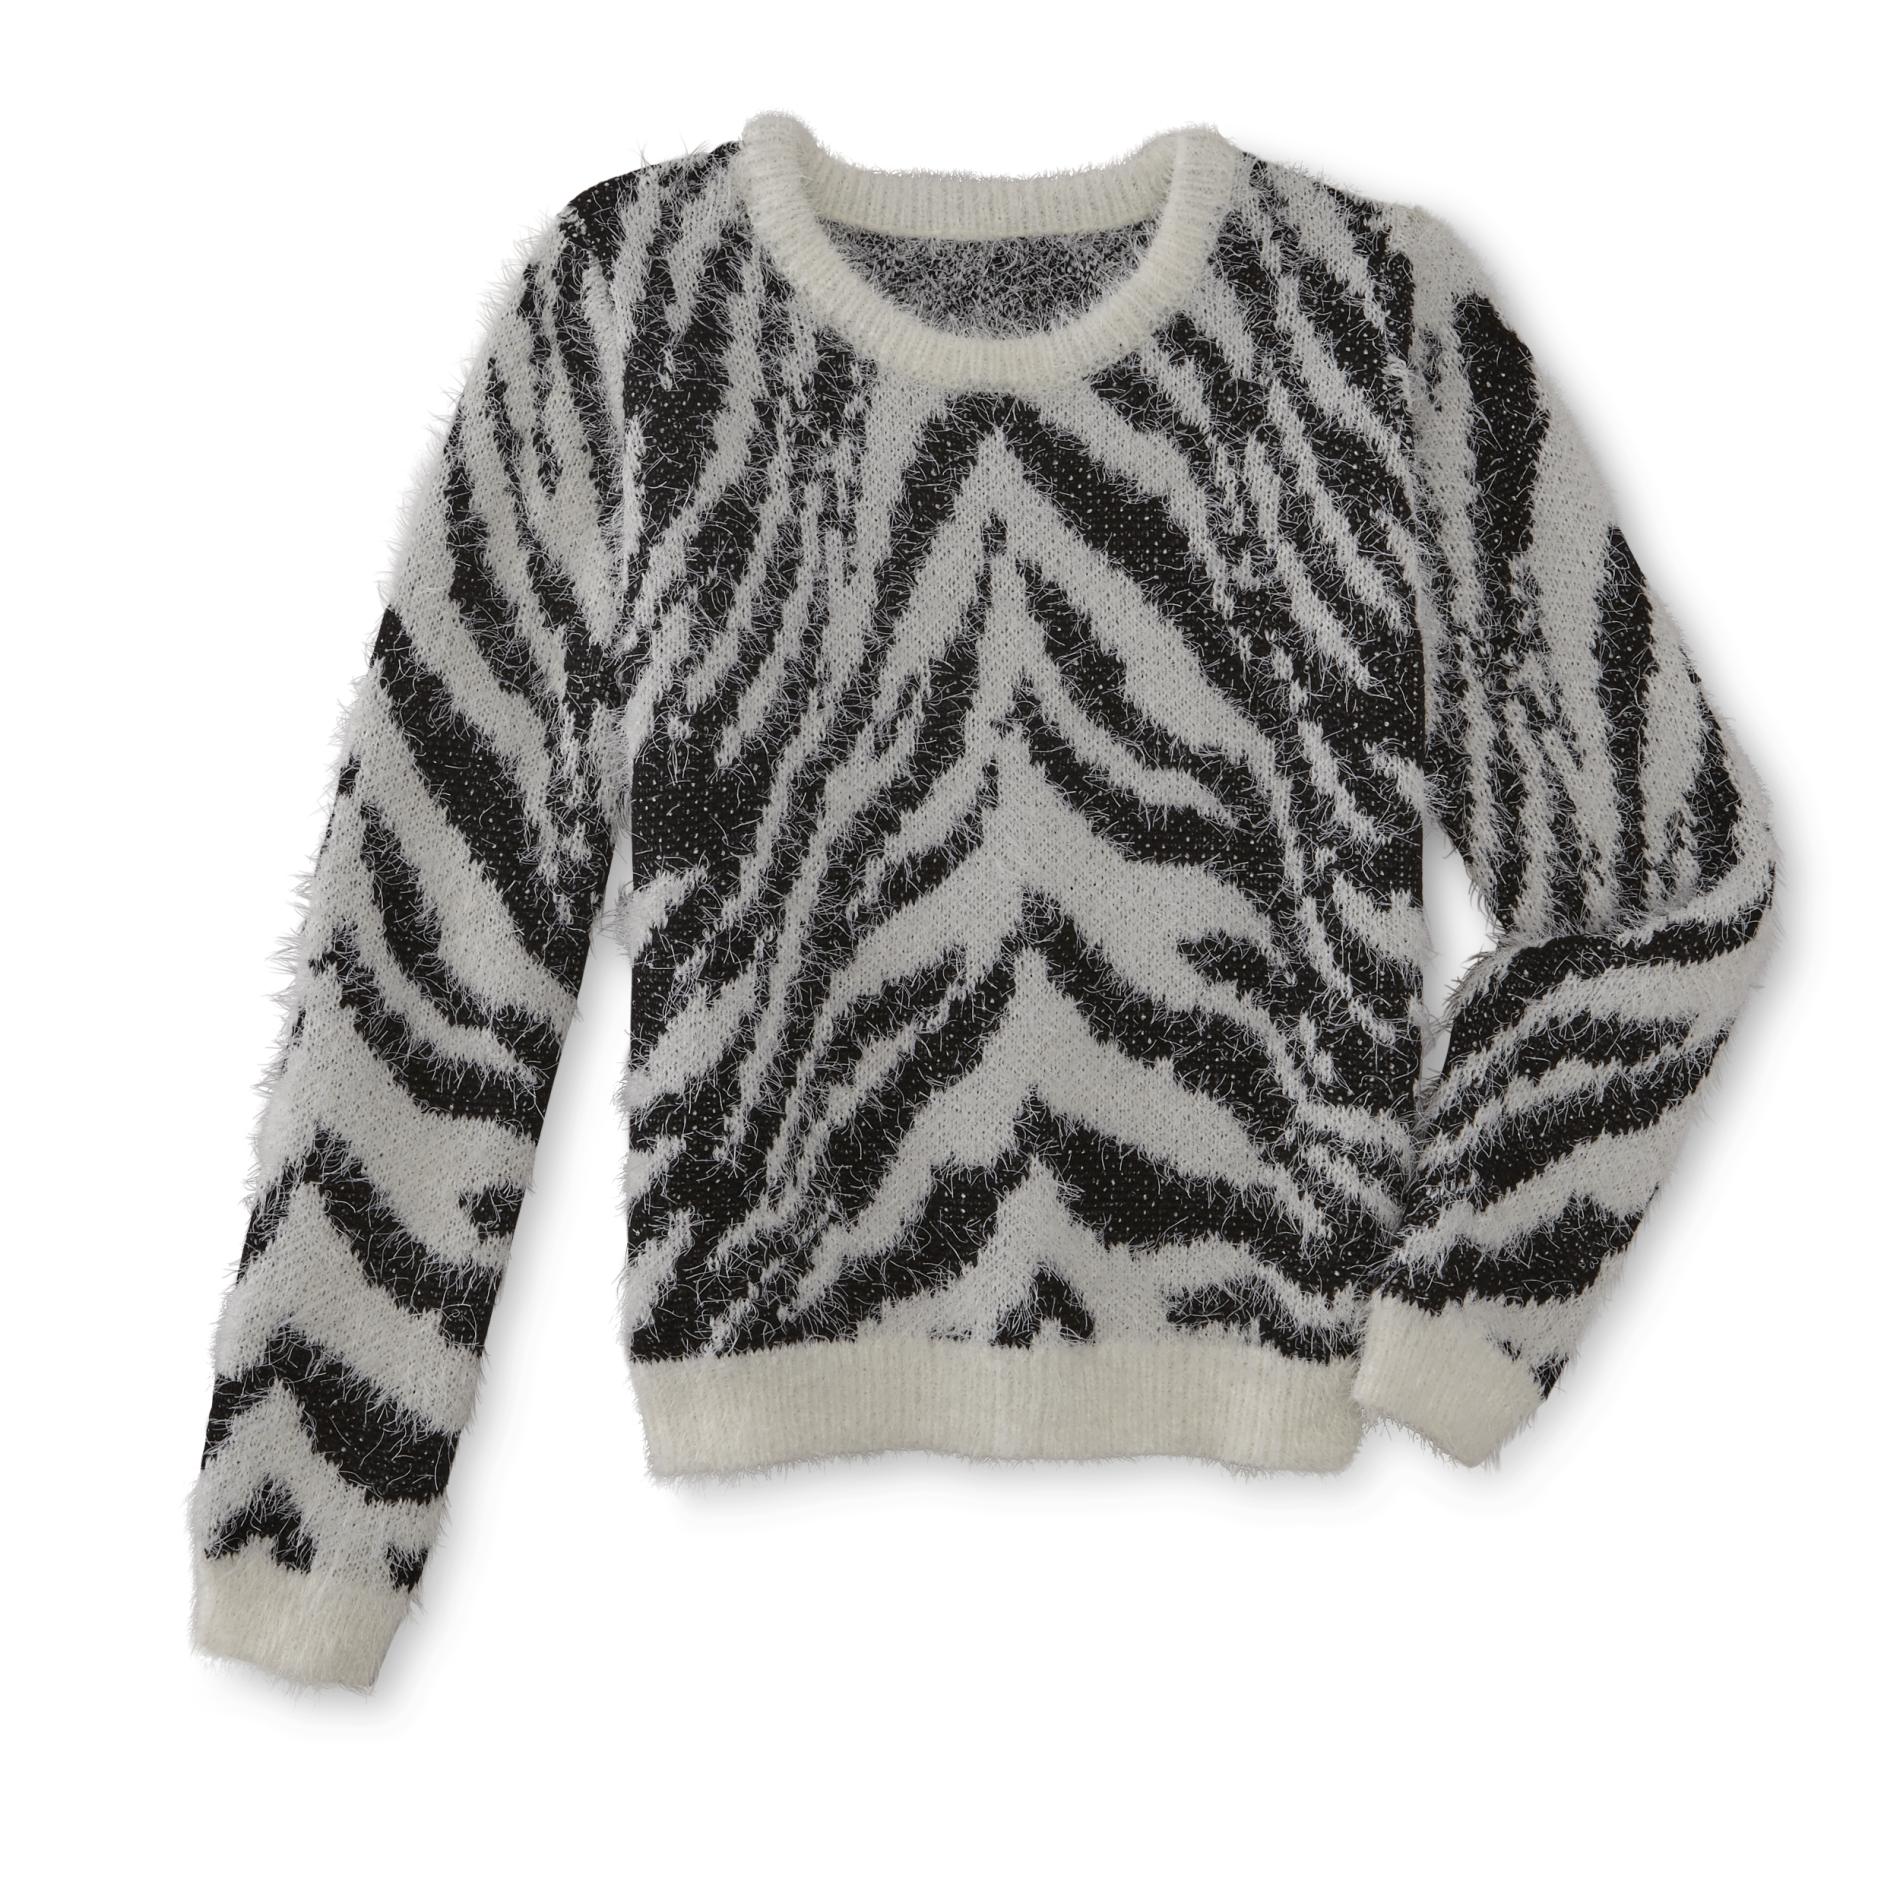 Roebuck & Co. Girls' Eyelash Sweater - Zebra